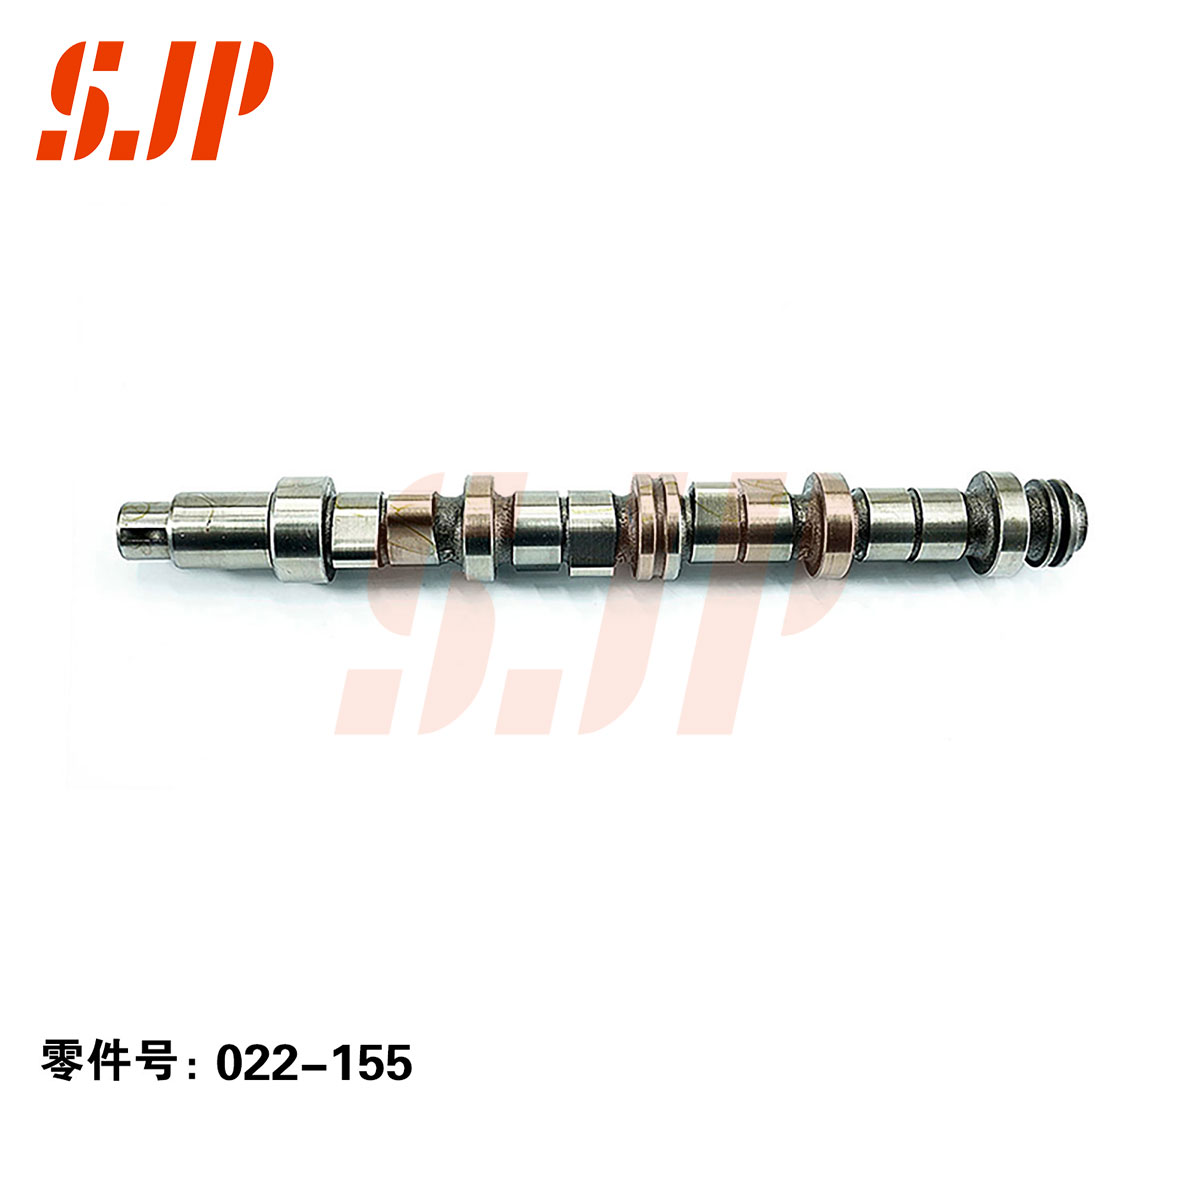 SJ-022-155 Camshaft For BJ410